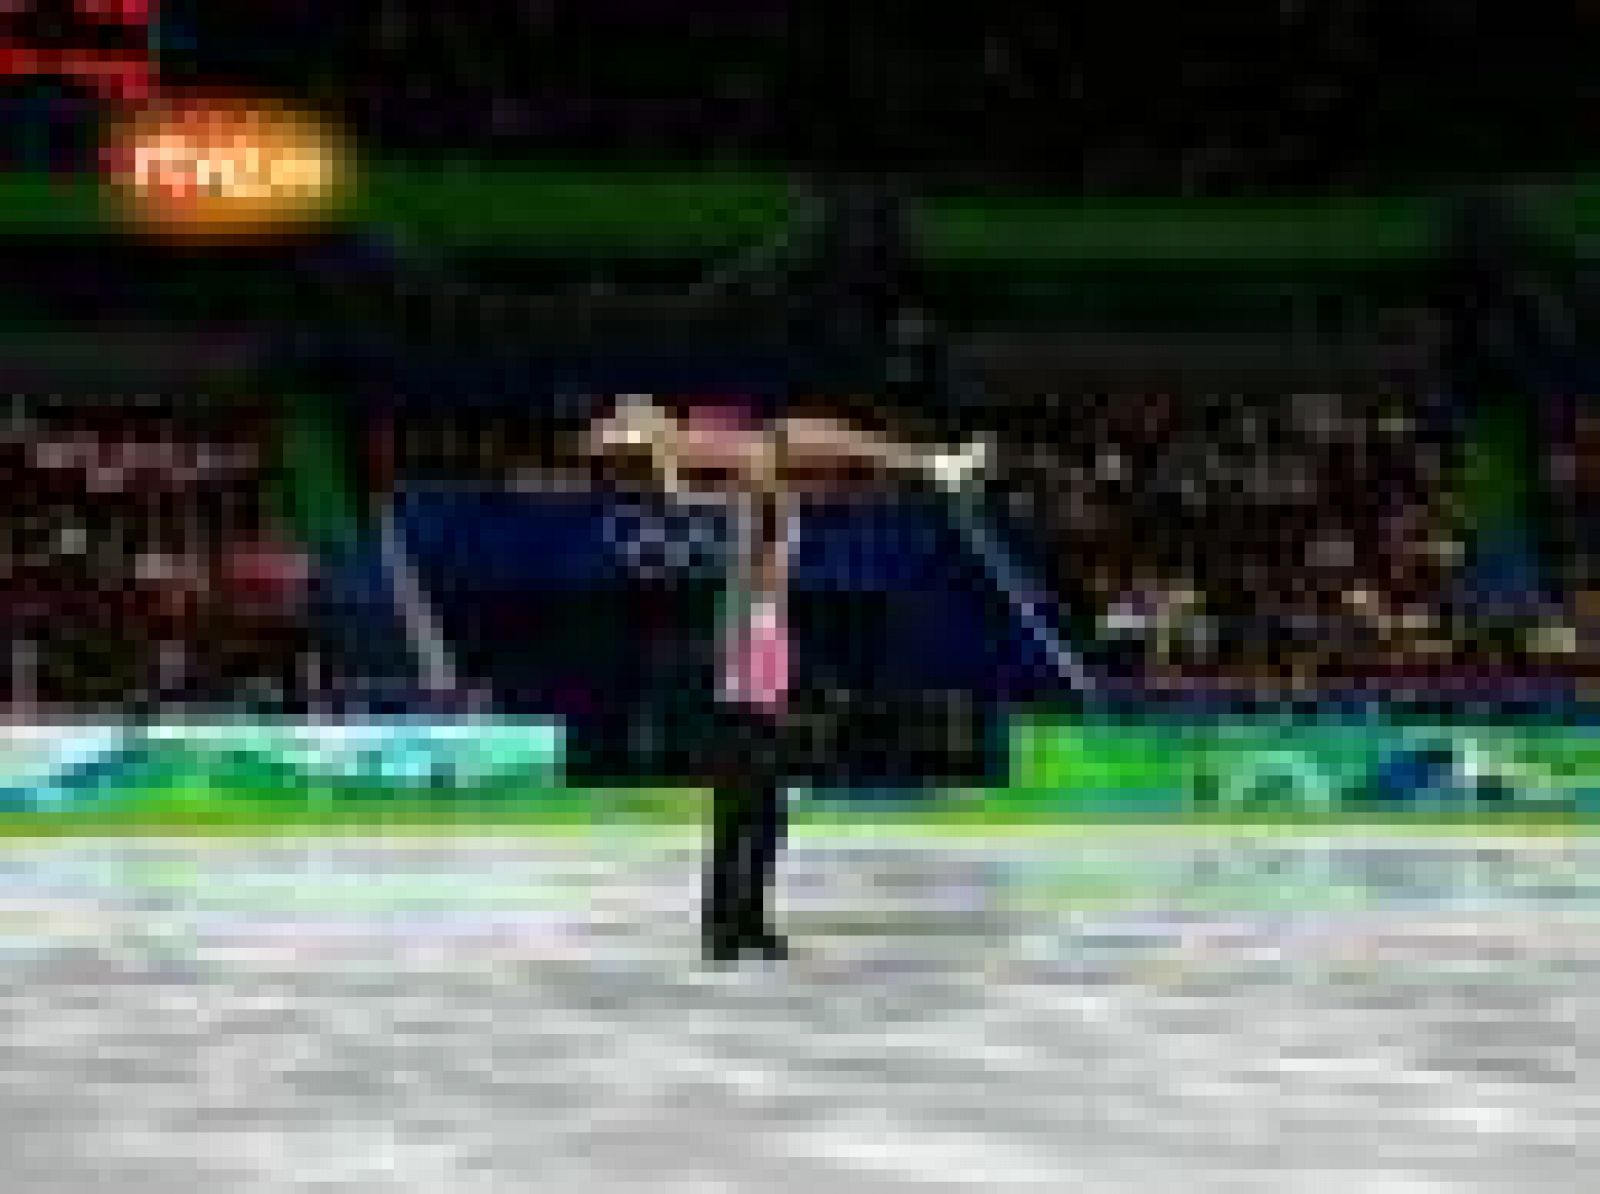   Los patinadores chinos Xue Shen y Hongbo Zhao terminaron en primera posición tras el programa corto en los Juegos de Vancouver 2010